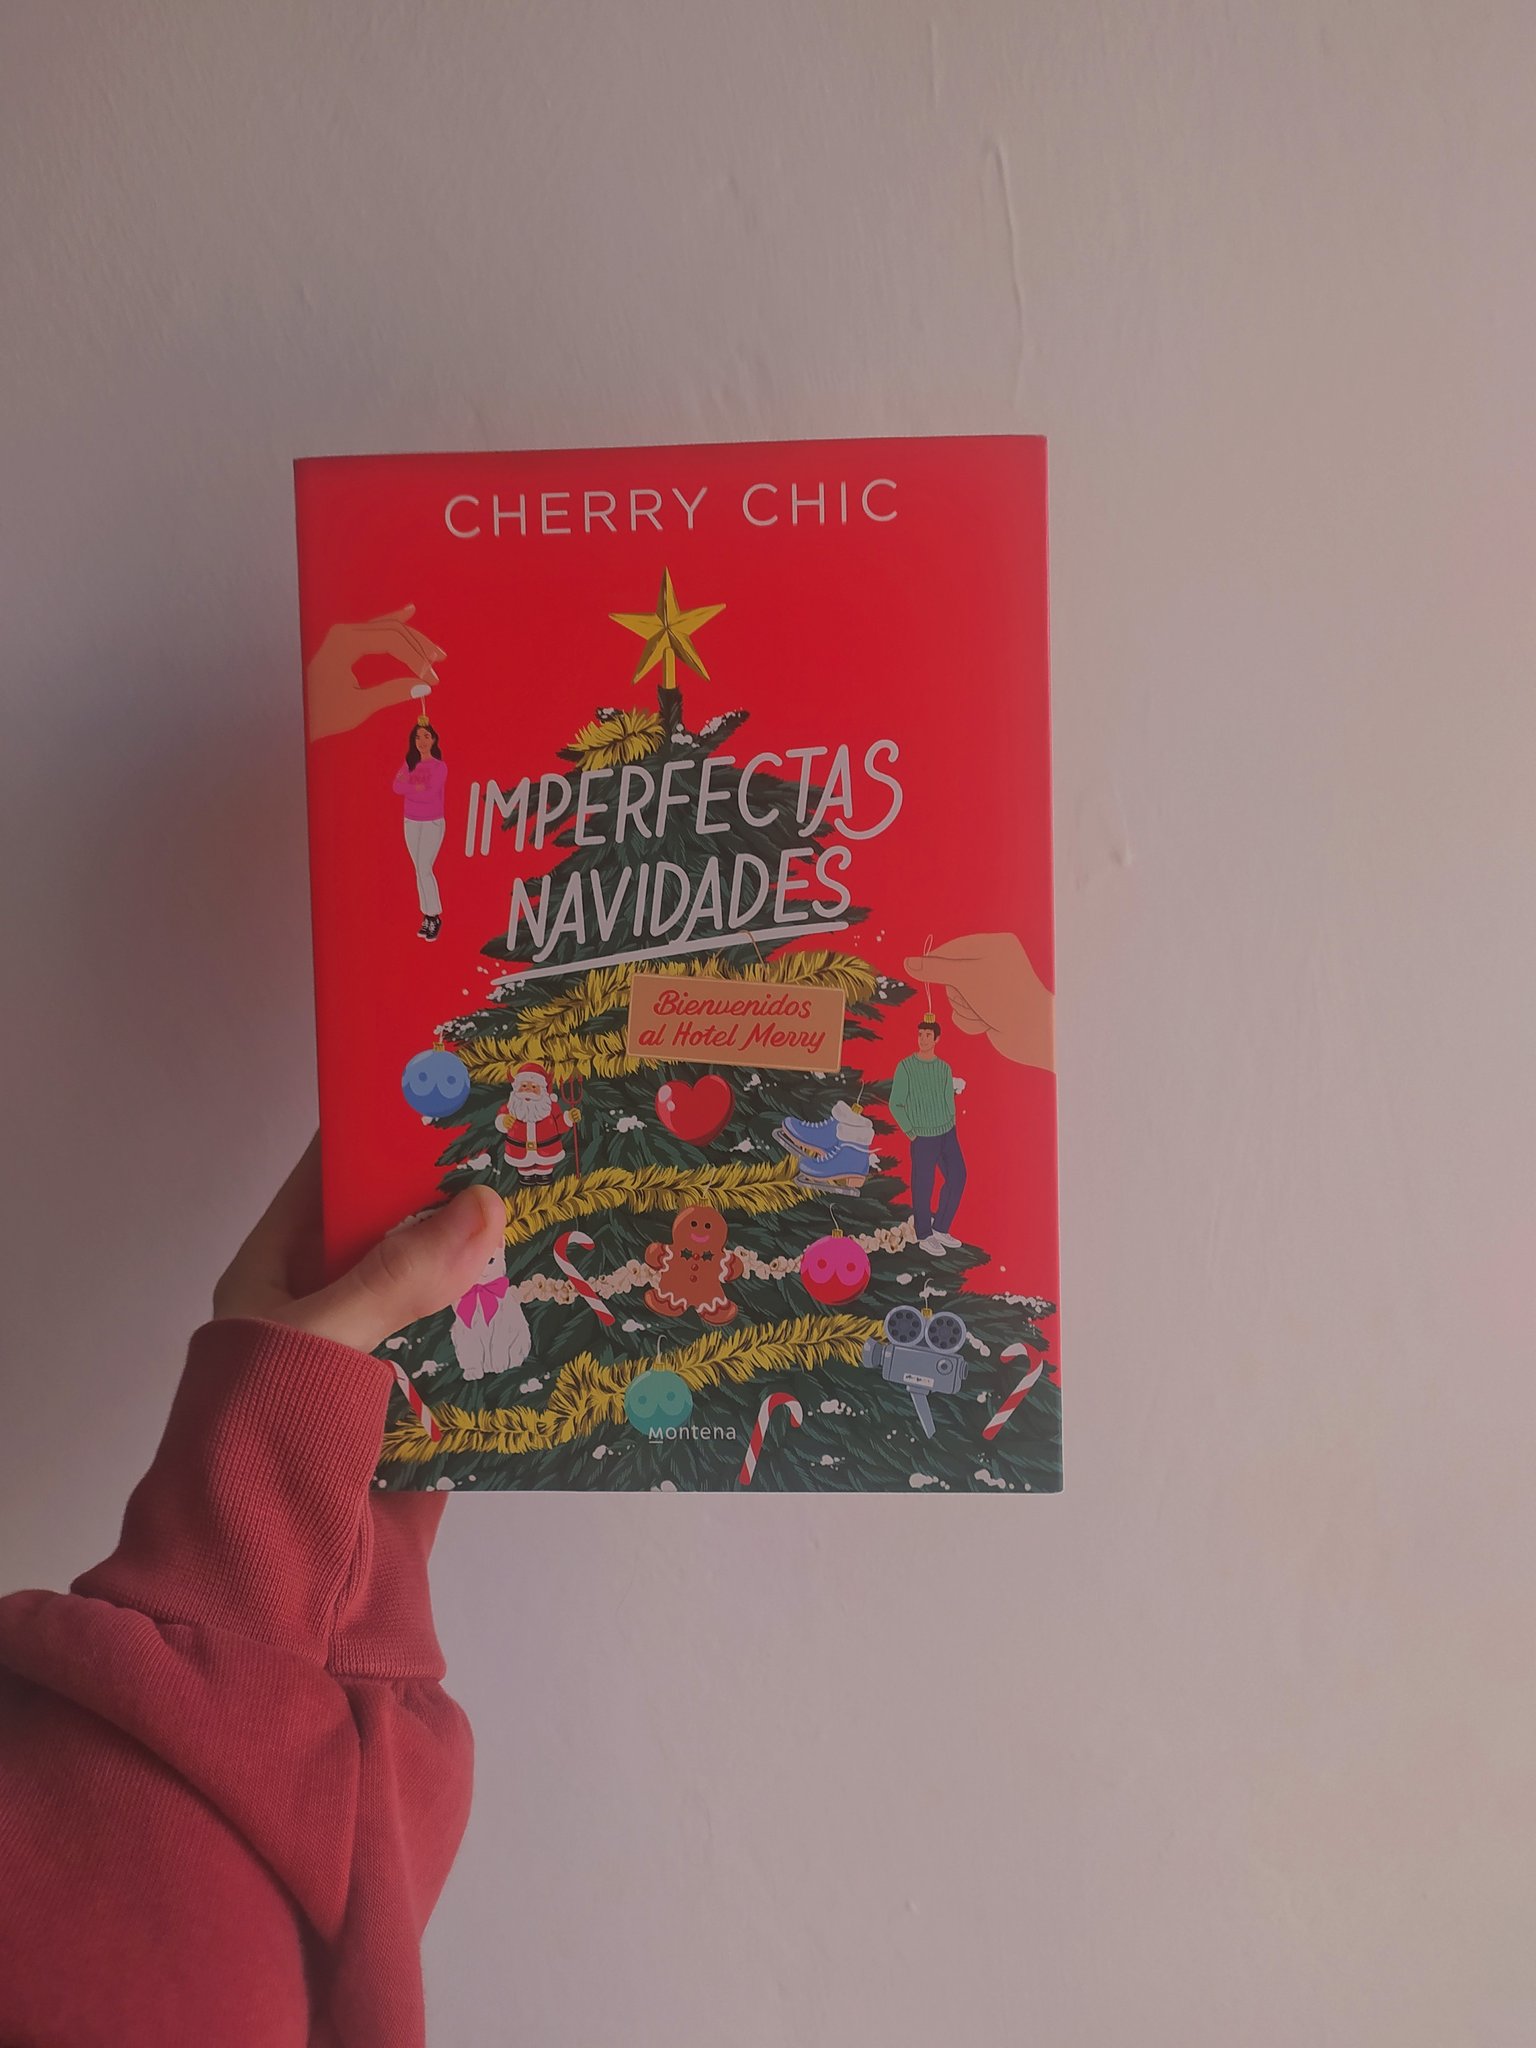 Cherry Chic: La magia de sus libros en Valle del Guadalhorce